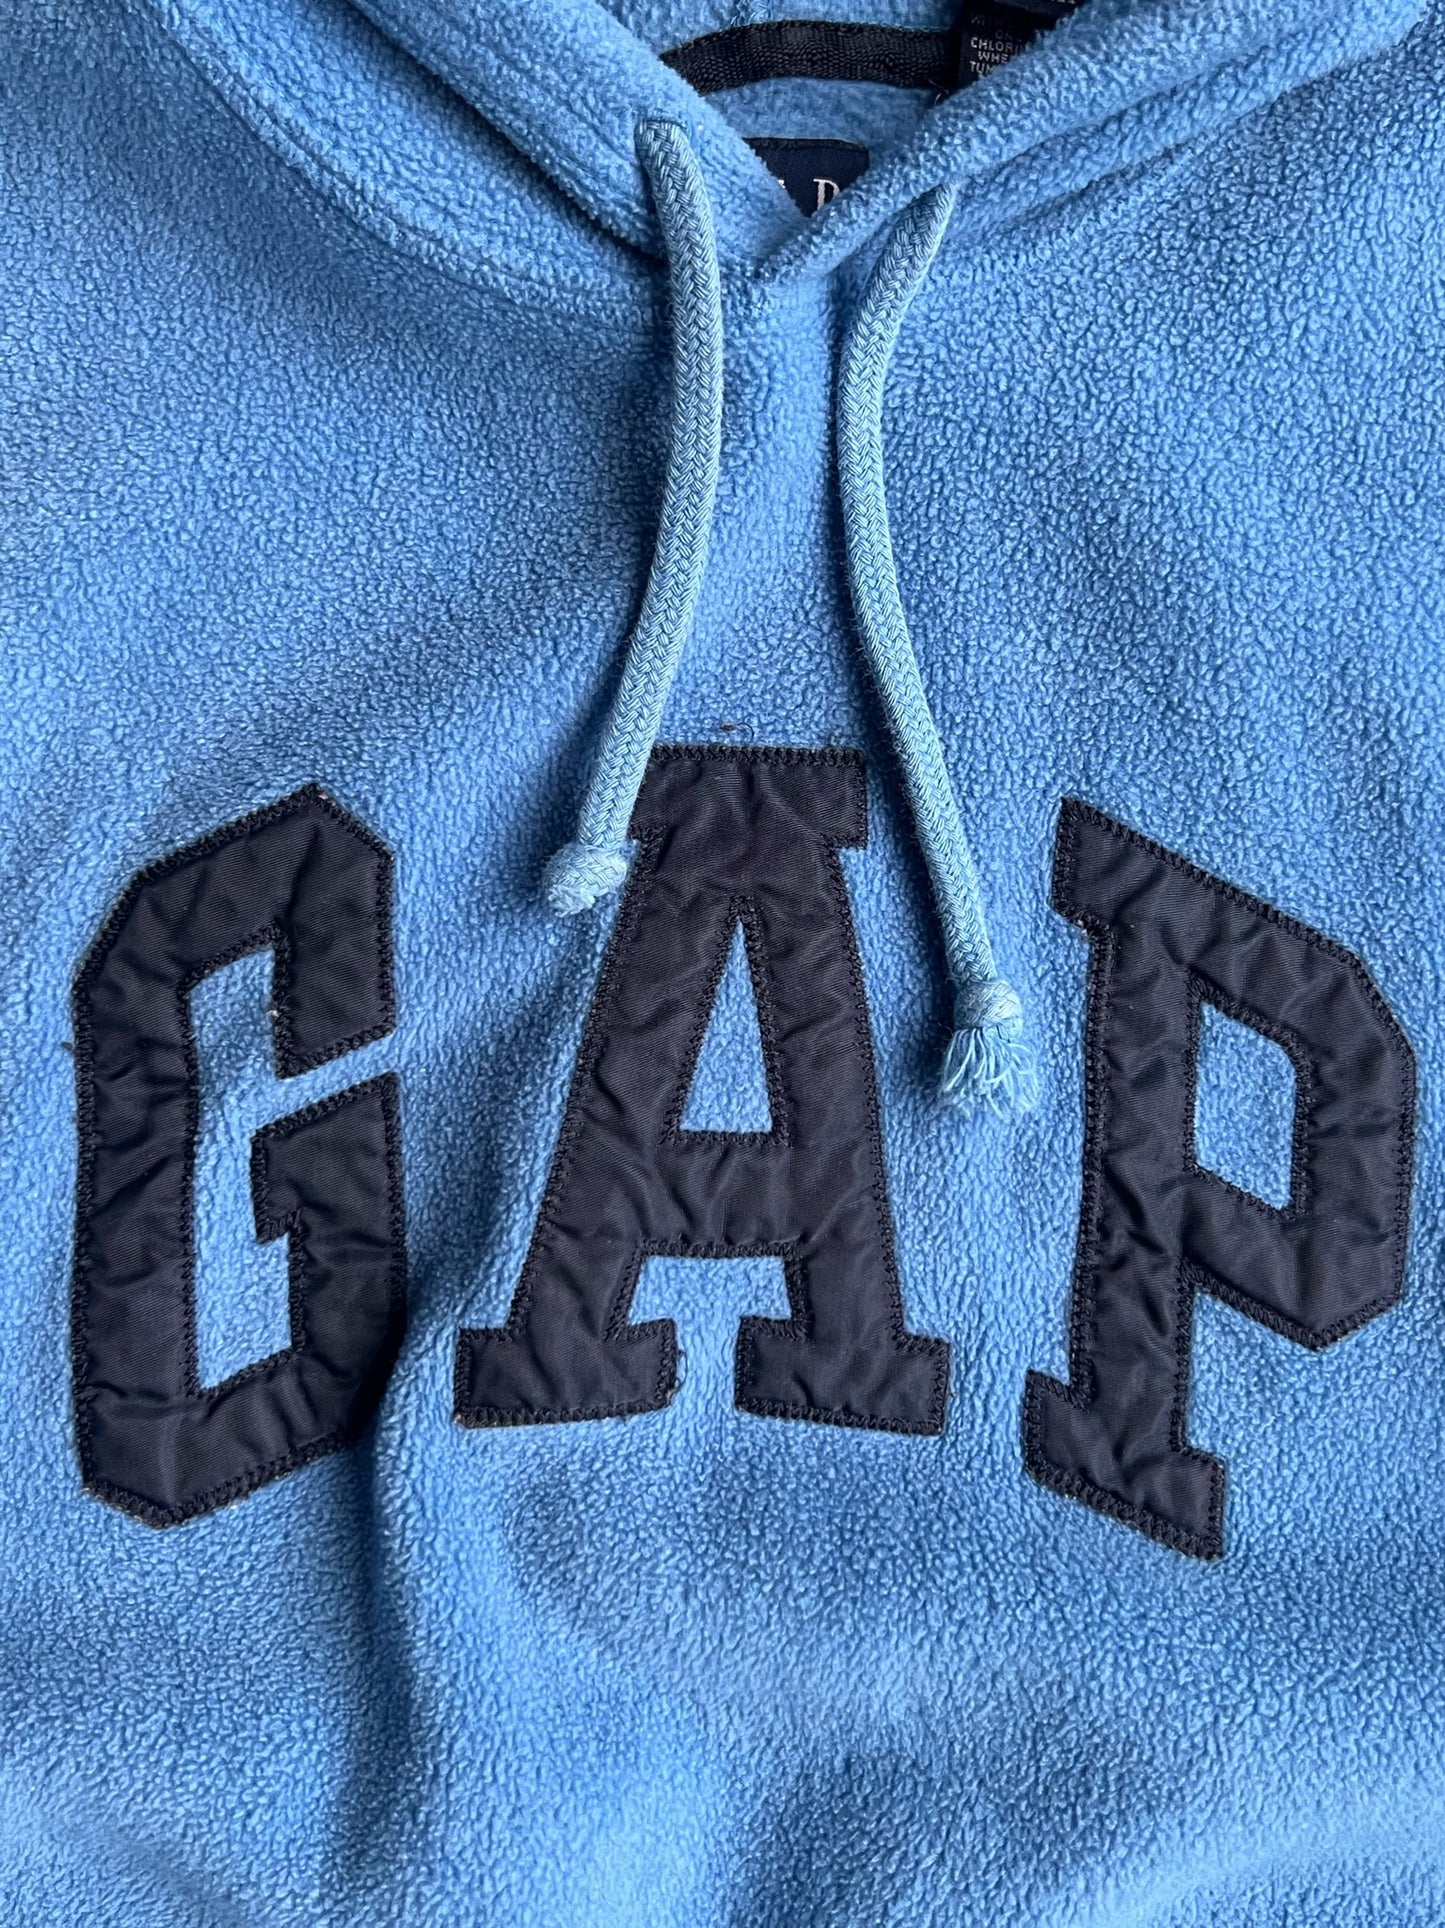 Vintage Gap Fleece Hoodie - L